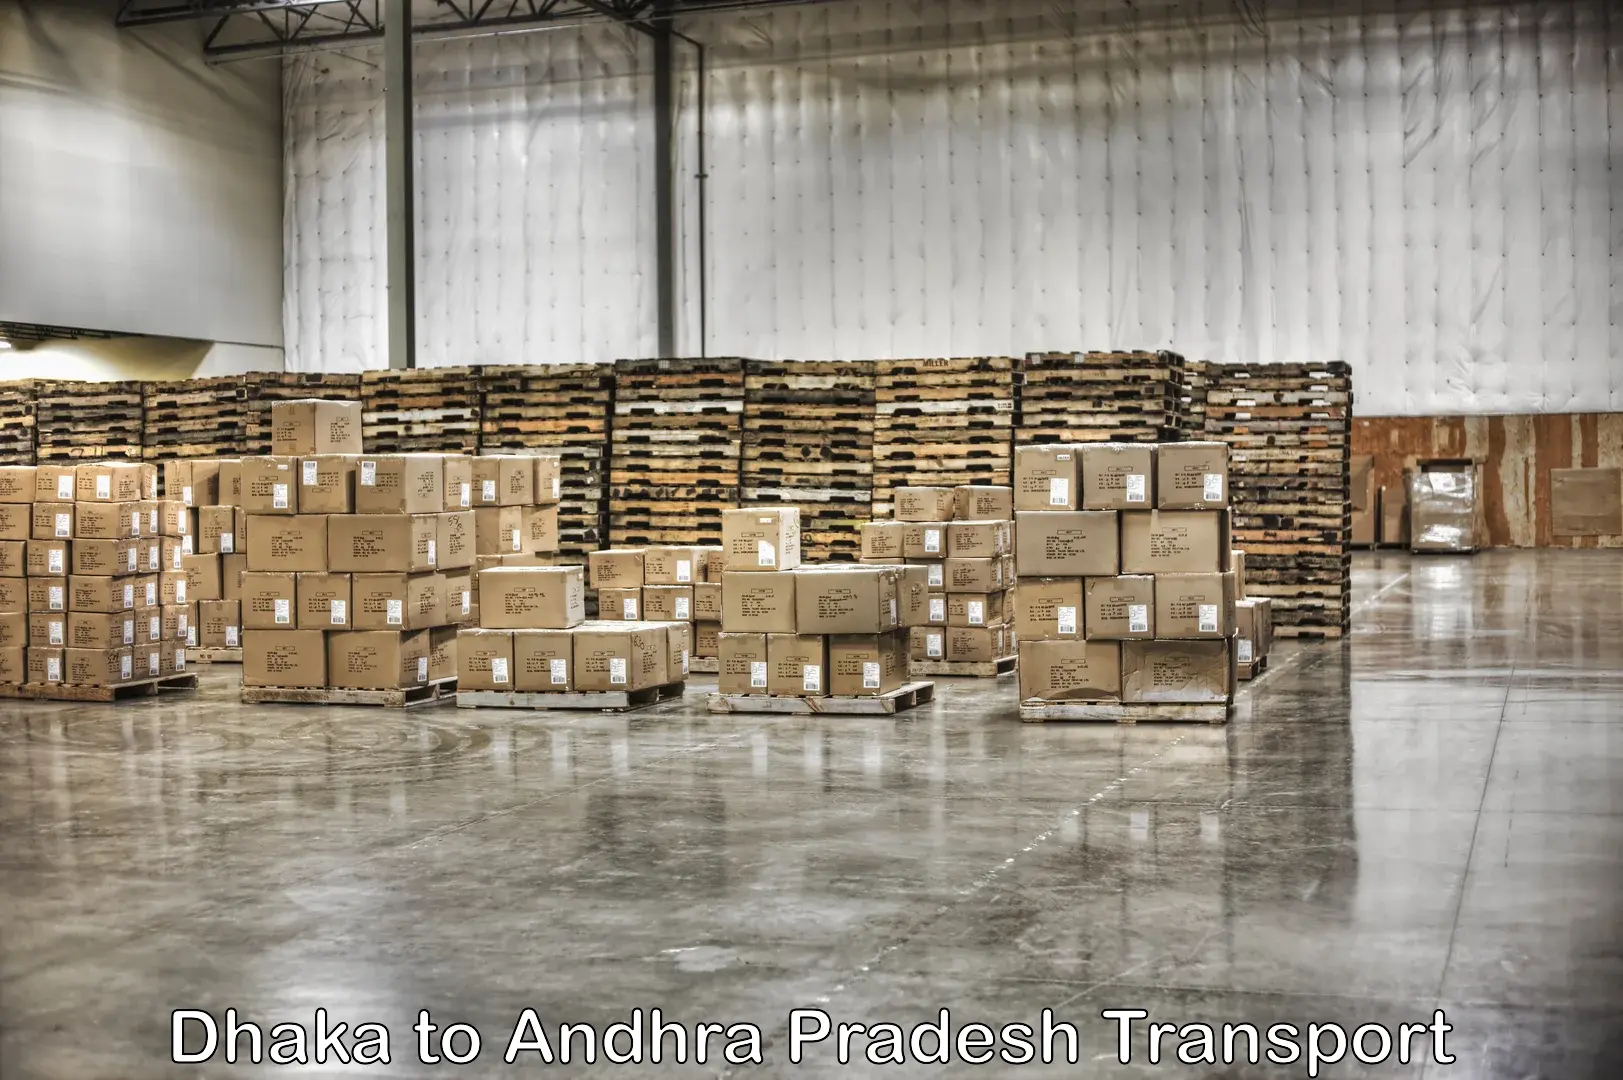 Cargo transport services Dhaka to Yellamanchili